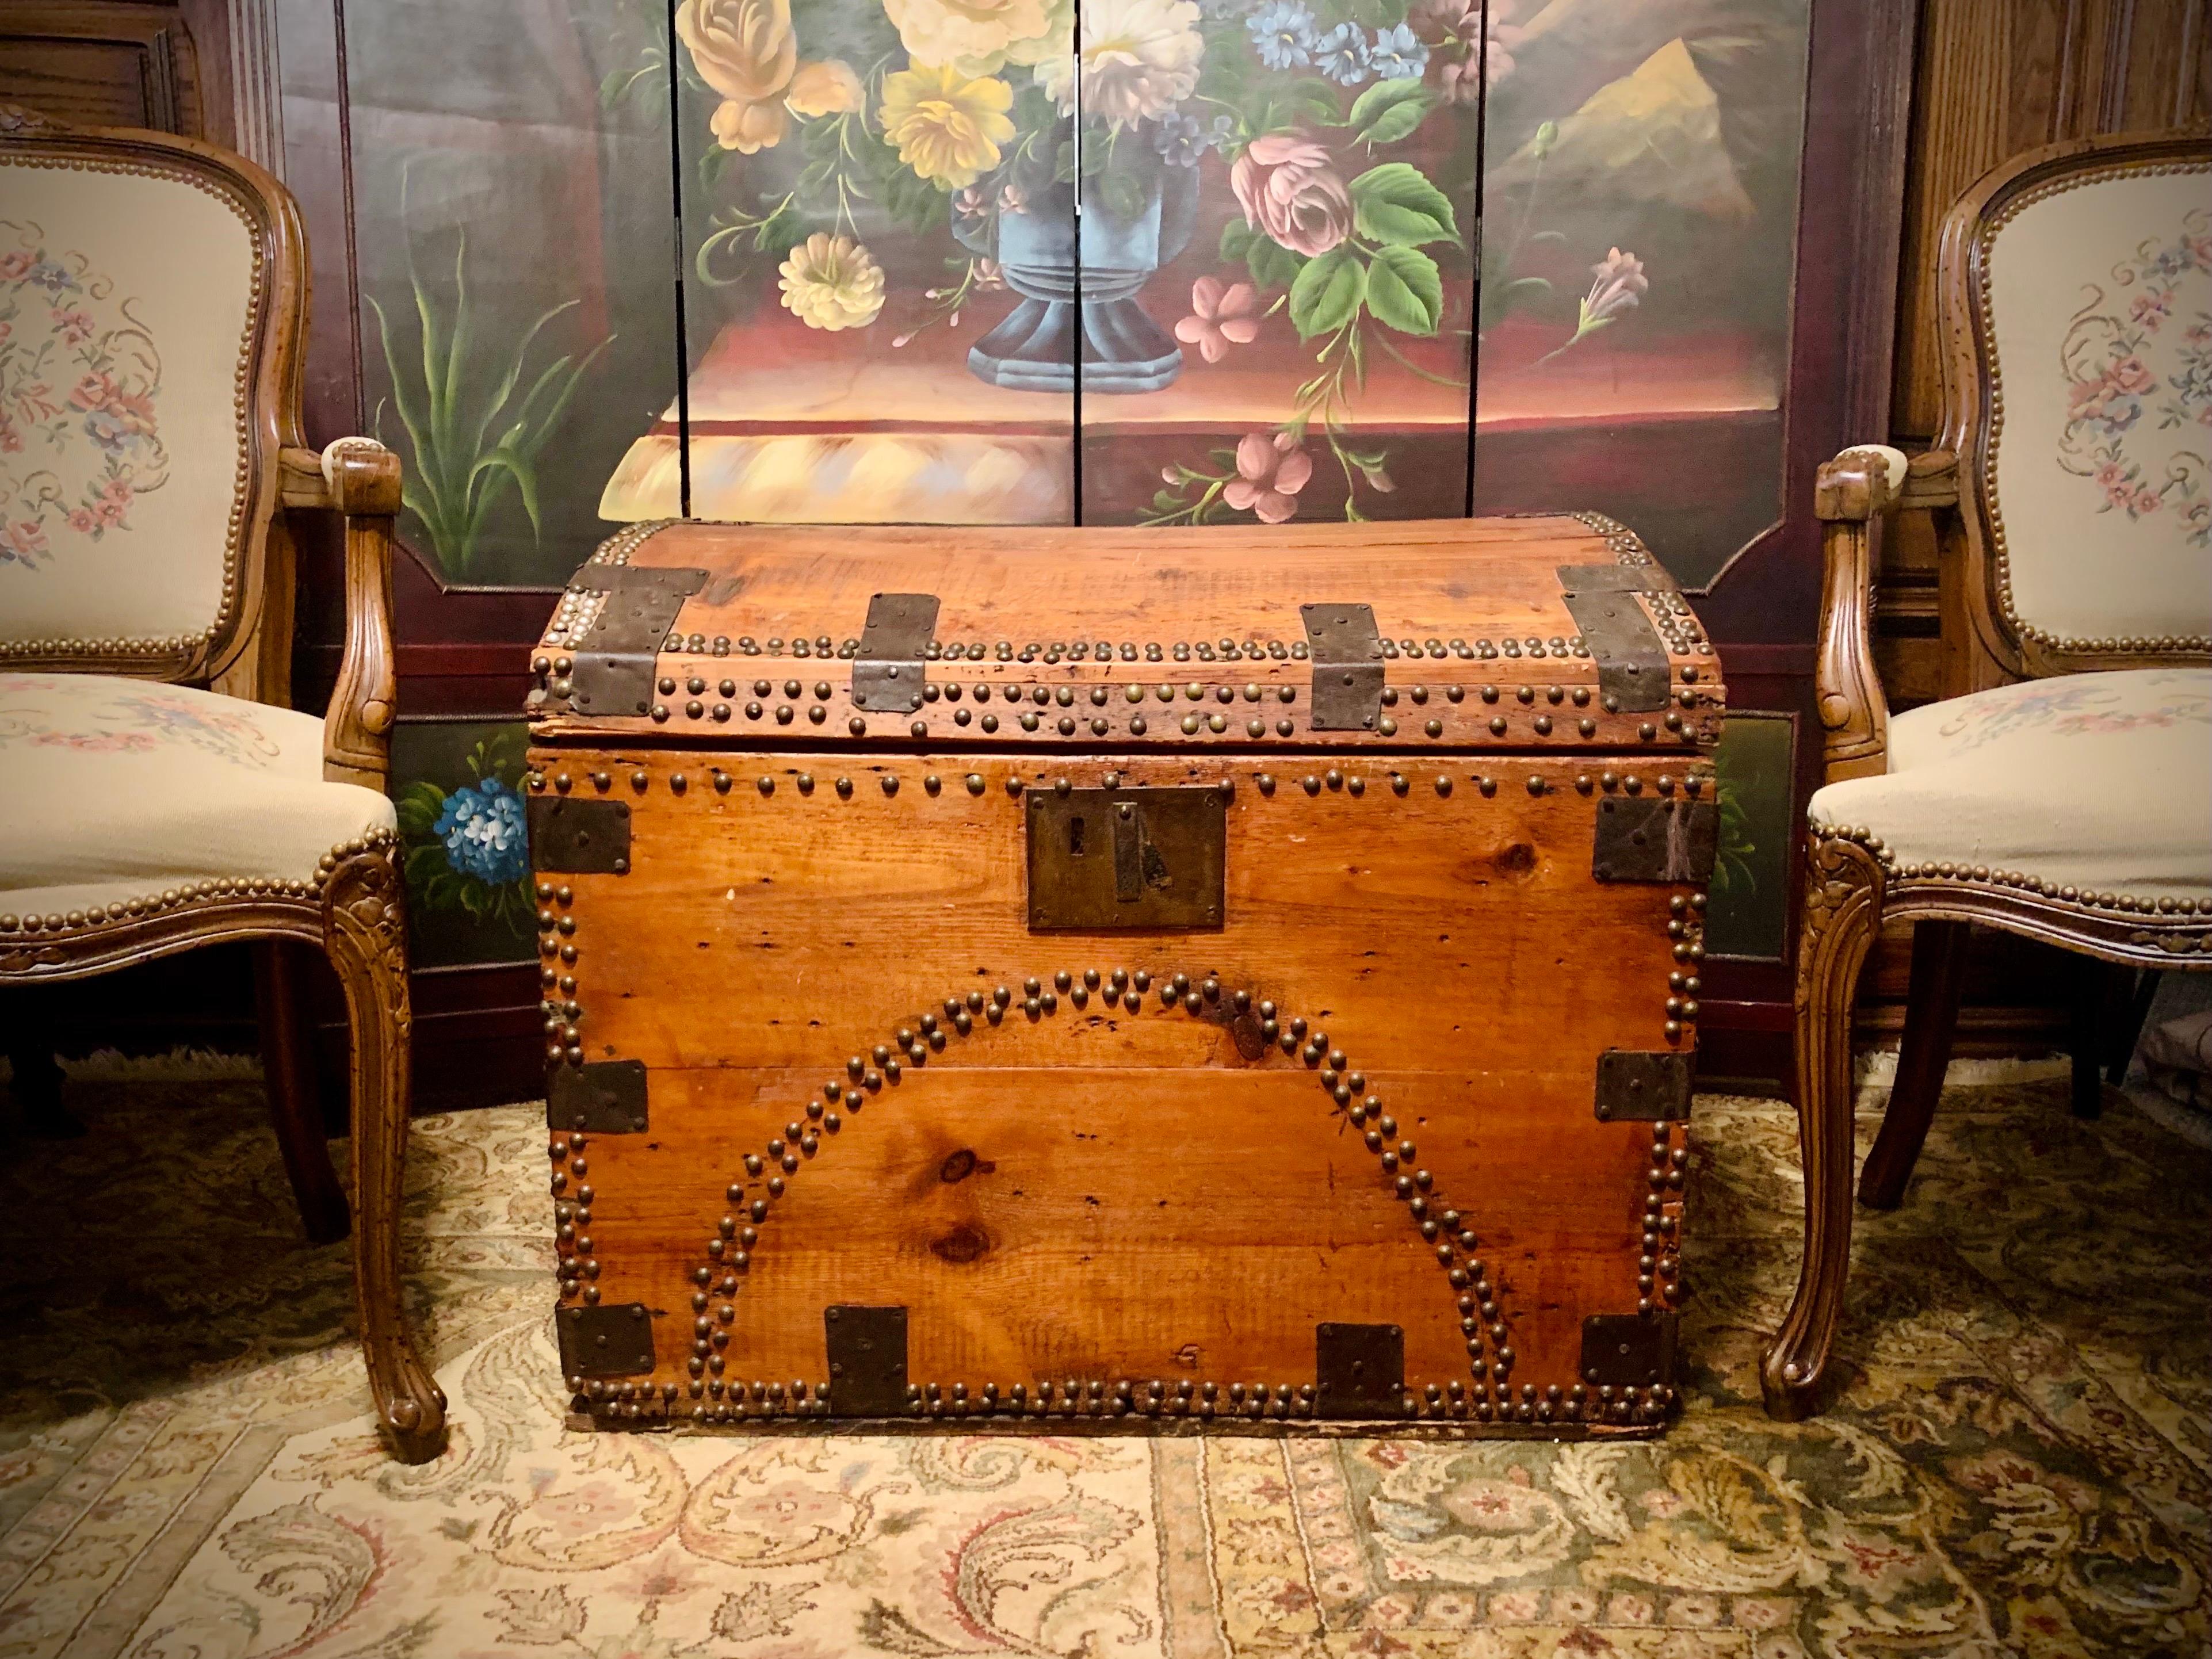 Circa 1860-1870, ce coffre en bois ancien est un véritable trésor. Fabriquée à la main en pin rouge originaire de la côte est de l'Amérique du Nord, cette pièce date de l'époque de la guerre civile américaine (1861-1865).  Les charnières en fer